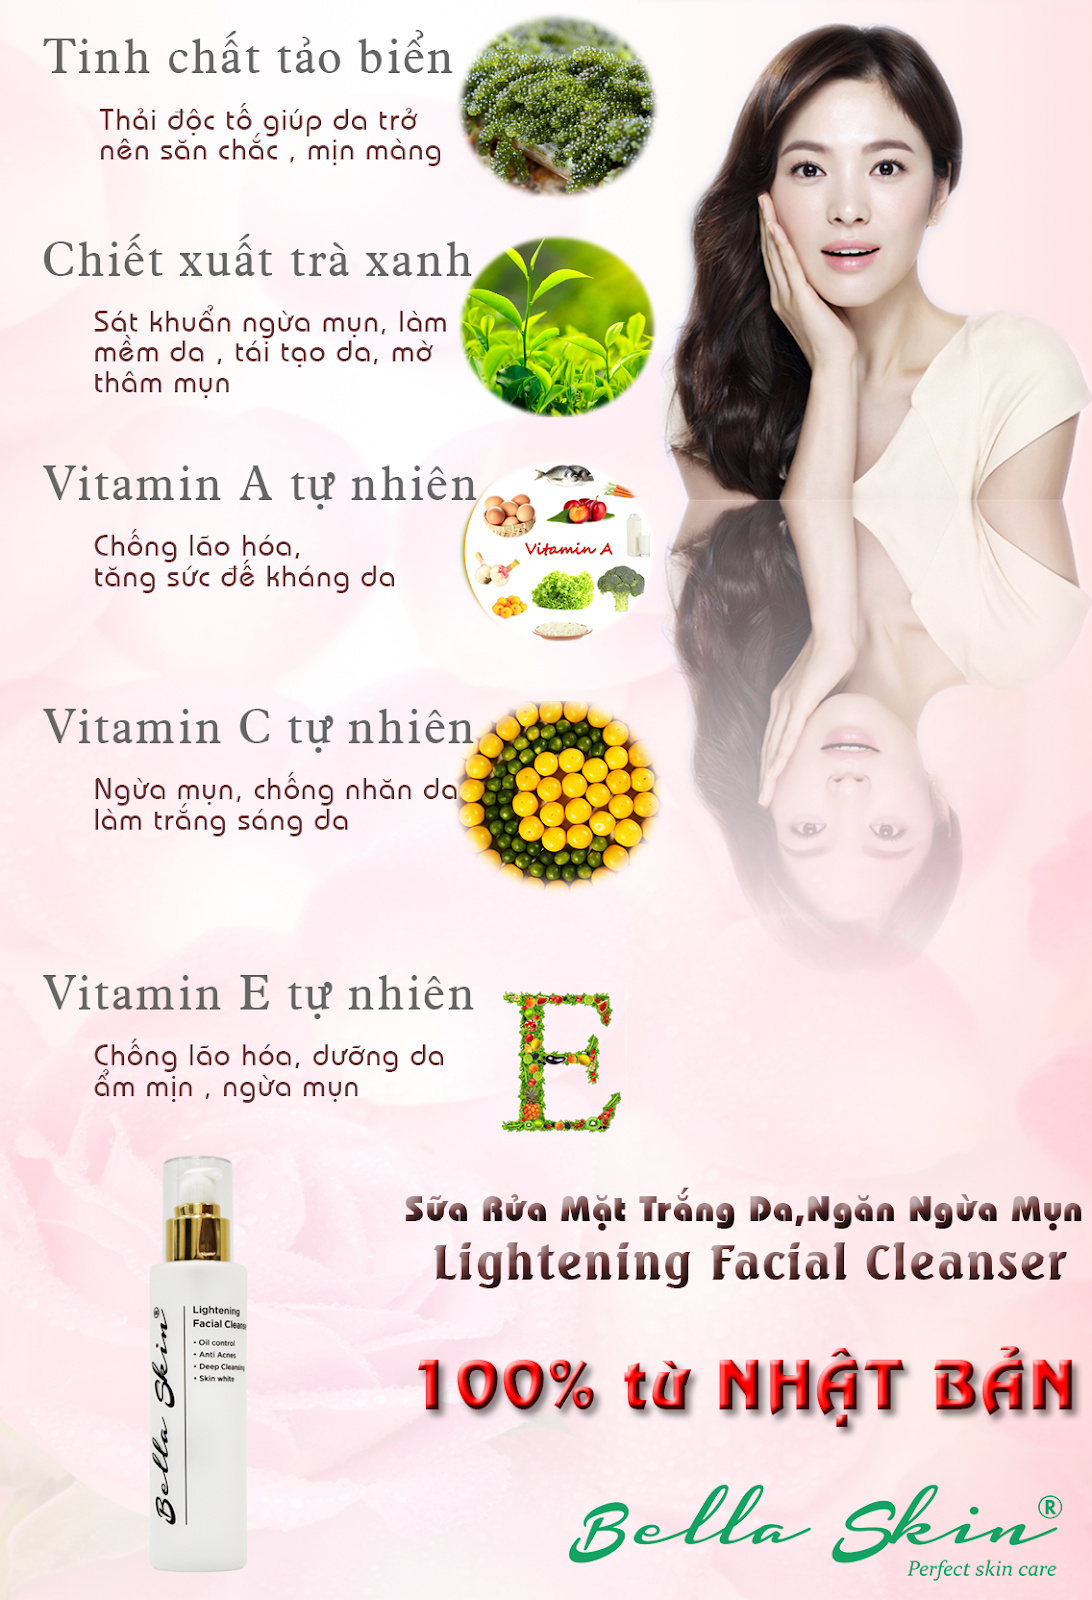 Sữa Rửa Mặt Trắng Da, Ngăn Ngừa Mụn Lightening Facial Cleanser SO-koBZpAfTDEXjiDCCqS7Do26hy2HYuBFZ6qM1PRZxvROIdIyrMOQHY8laI5Dzgk0mV9ocqHRBv7WK7HjyfAKYBEmm53A0RupHVhUTCBMcosrzidM0tWMArQ94P9e3FUSBNq3rp